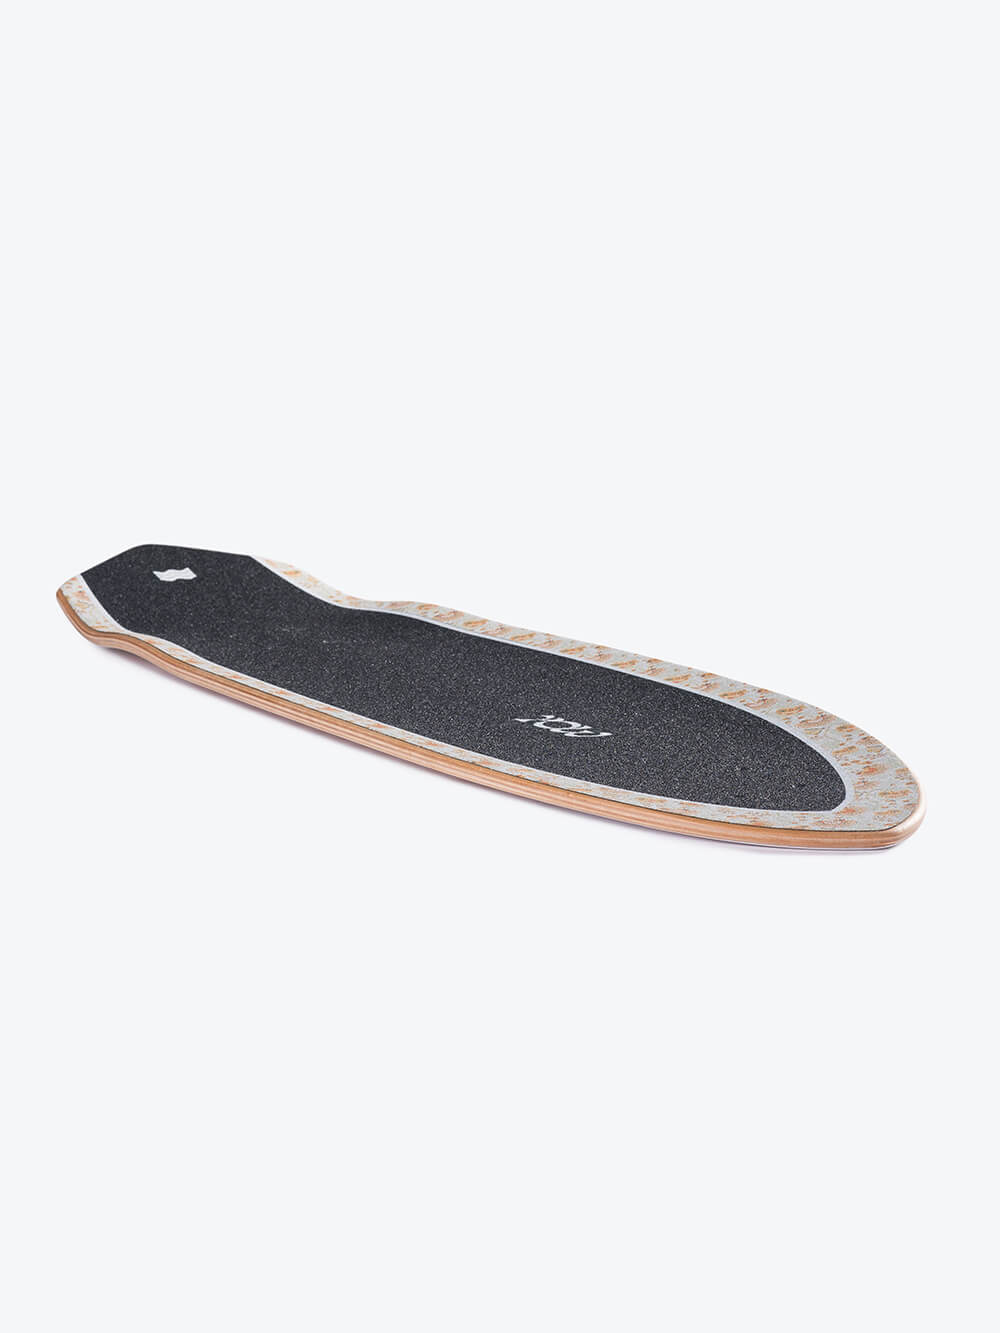 YOW Padang Padang 34″ deck - Surfskate Decks - YOW Surfskate